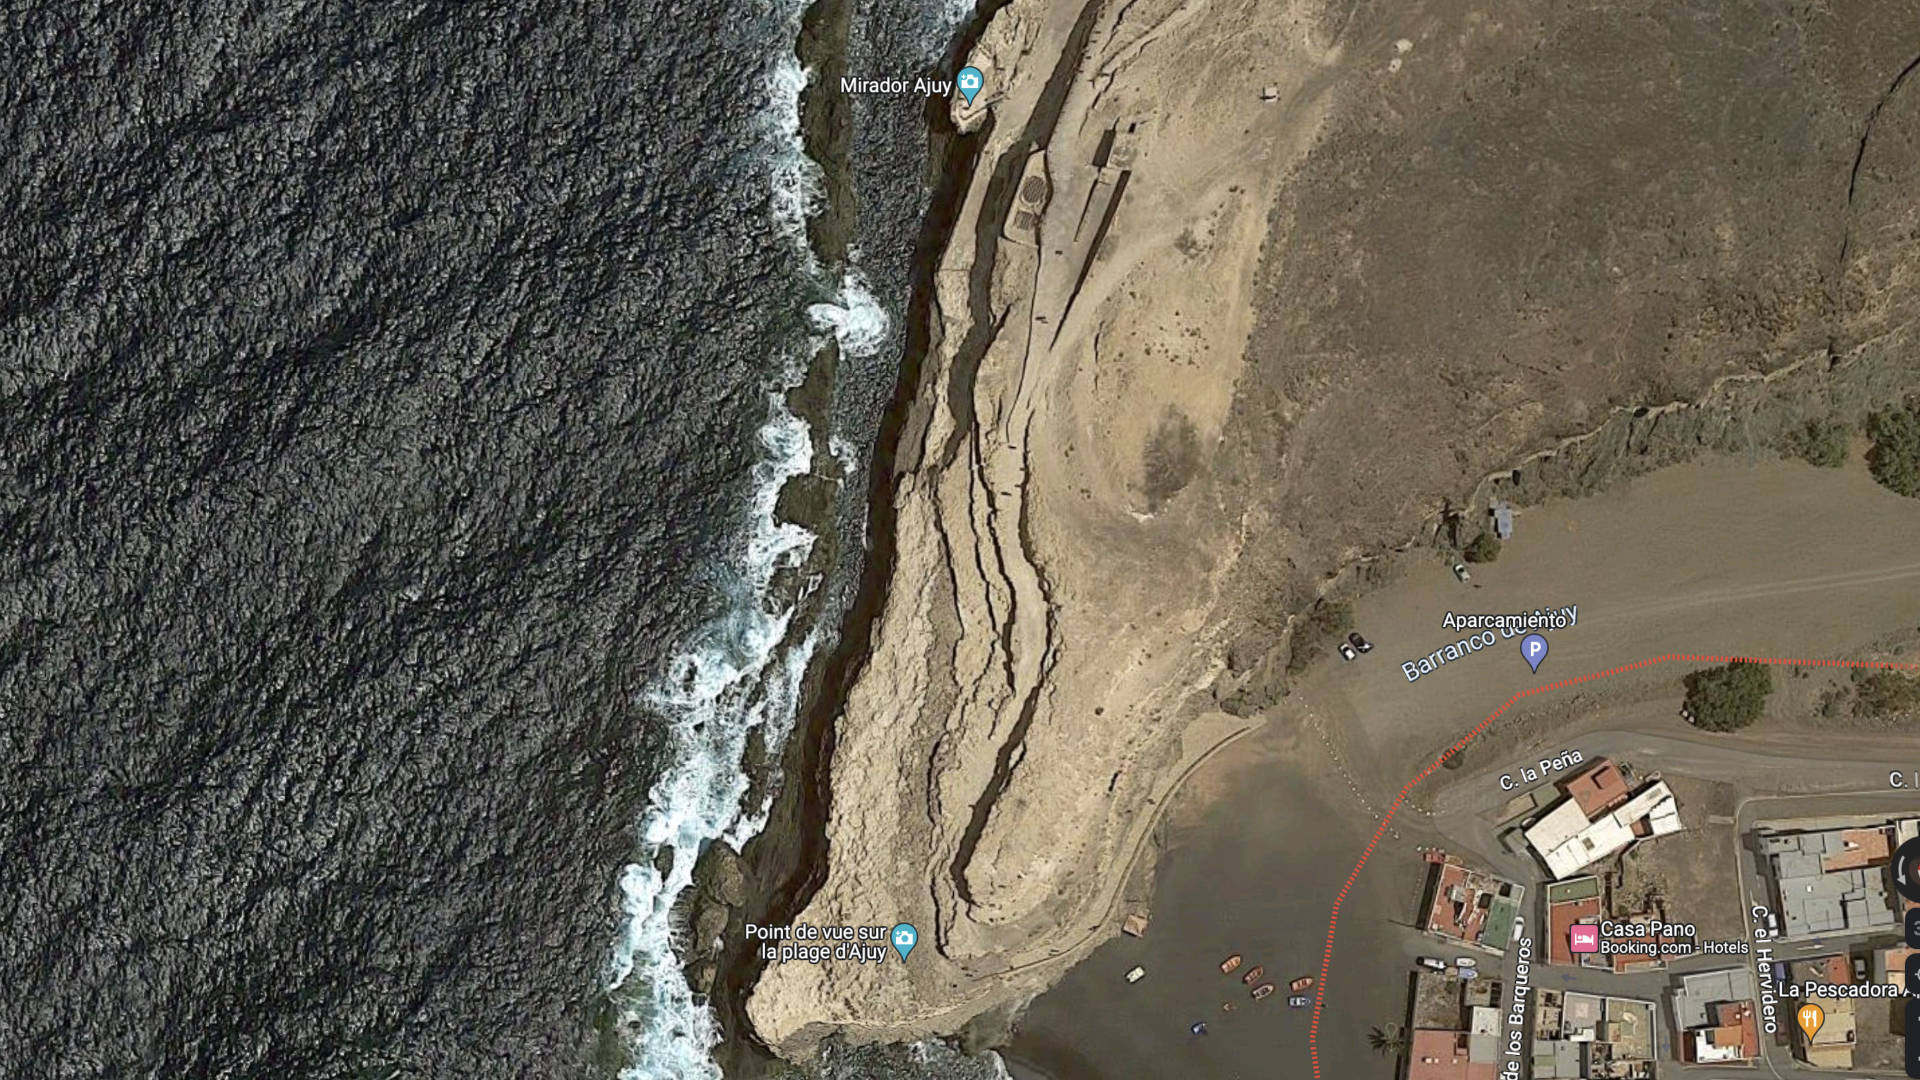 Tablero del Puerto Ajuy – die Spuren des Muschelkalk Abbaus. (© Google Earth, Google LLC)